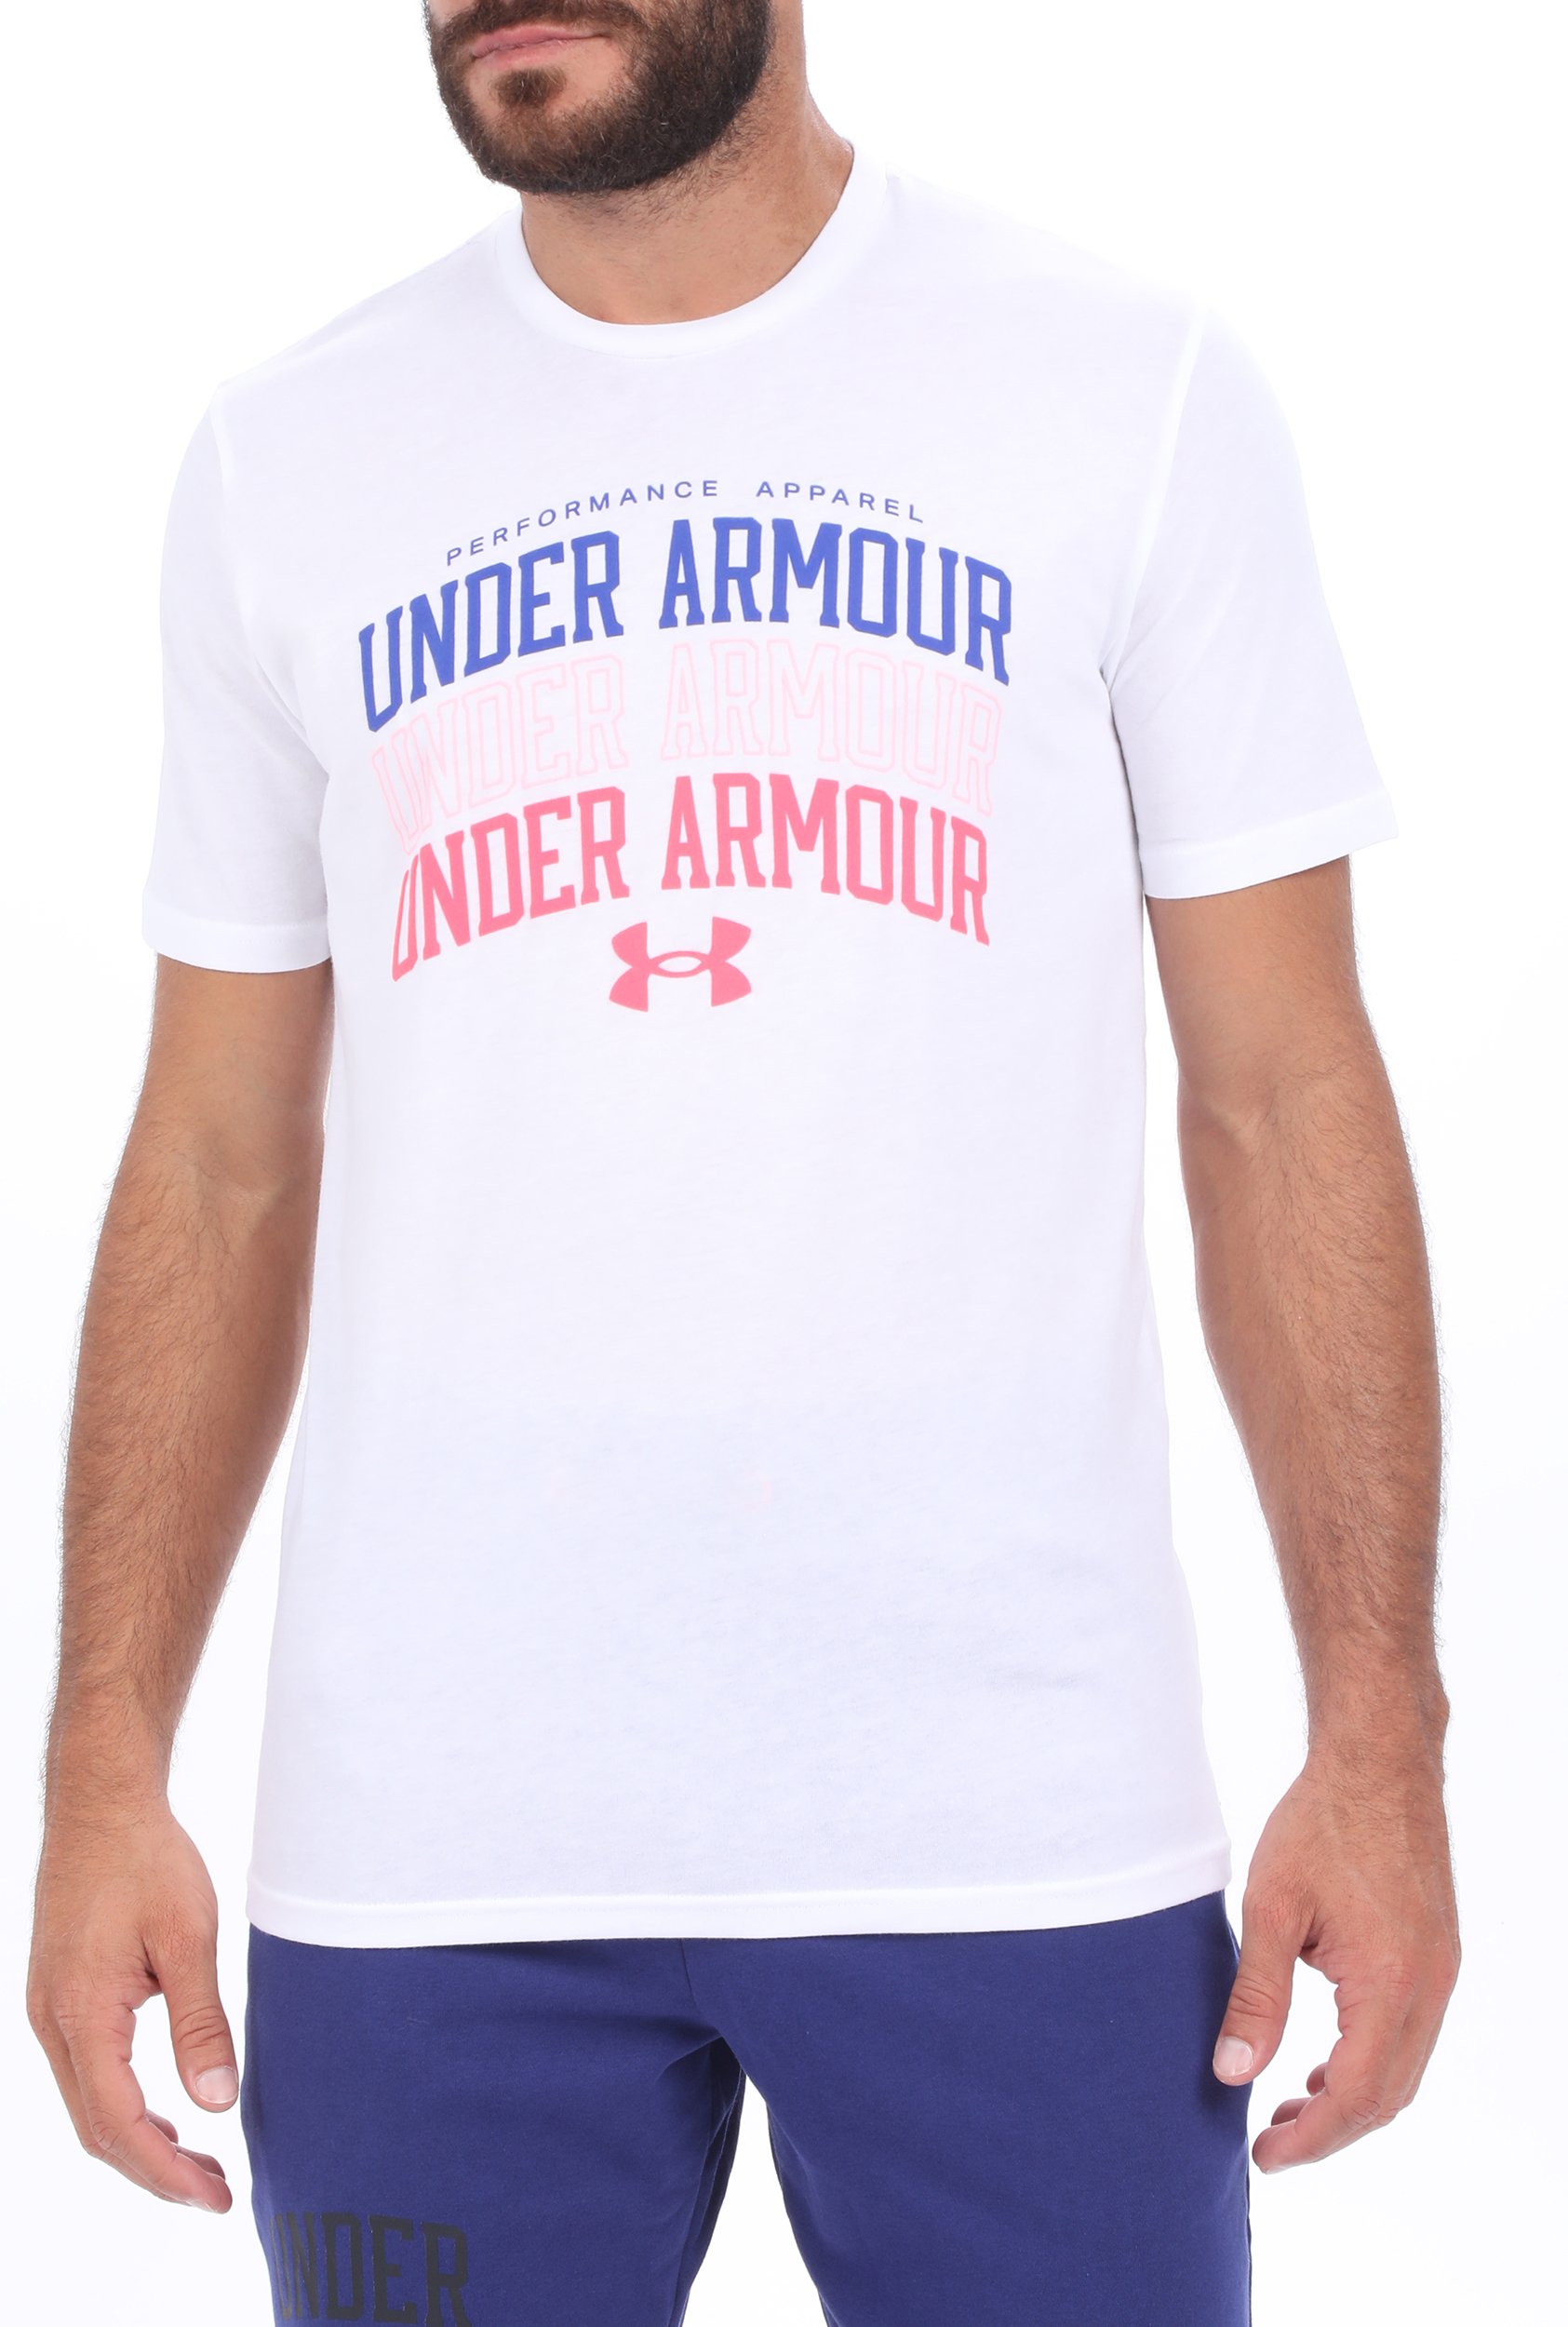 Ανδρικά/Ρούχα/Αθλητικά/T-shirt UNDER ARMOUR - Ανδρικό t-shirt UNDER ARMOUR MULTI COLOR COLLEGIATE λευκό